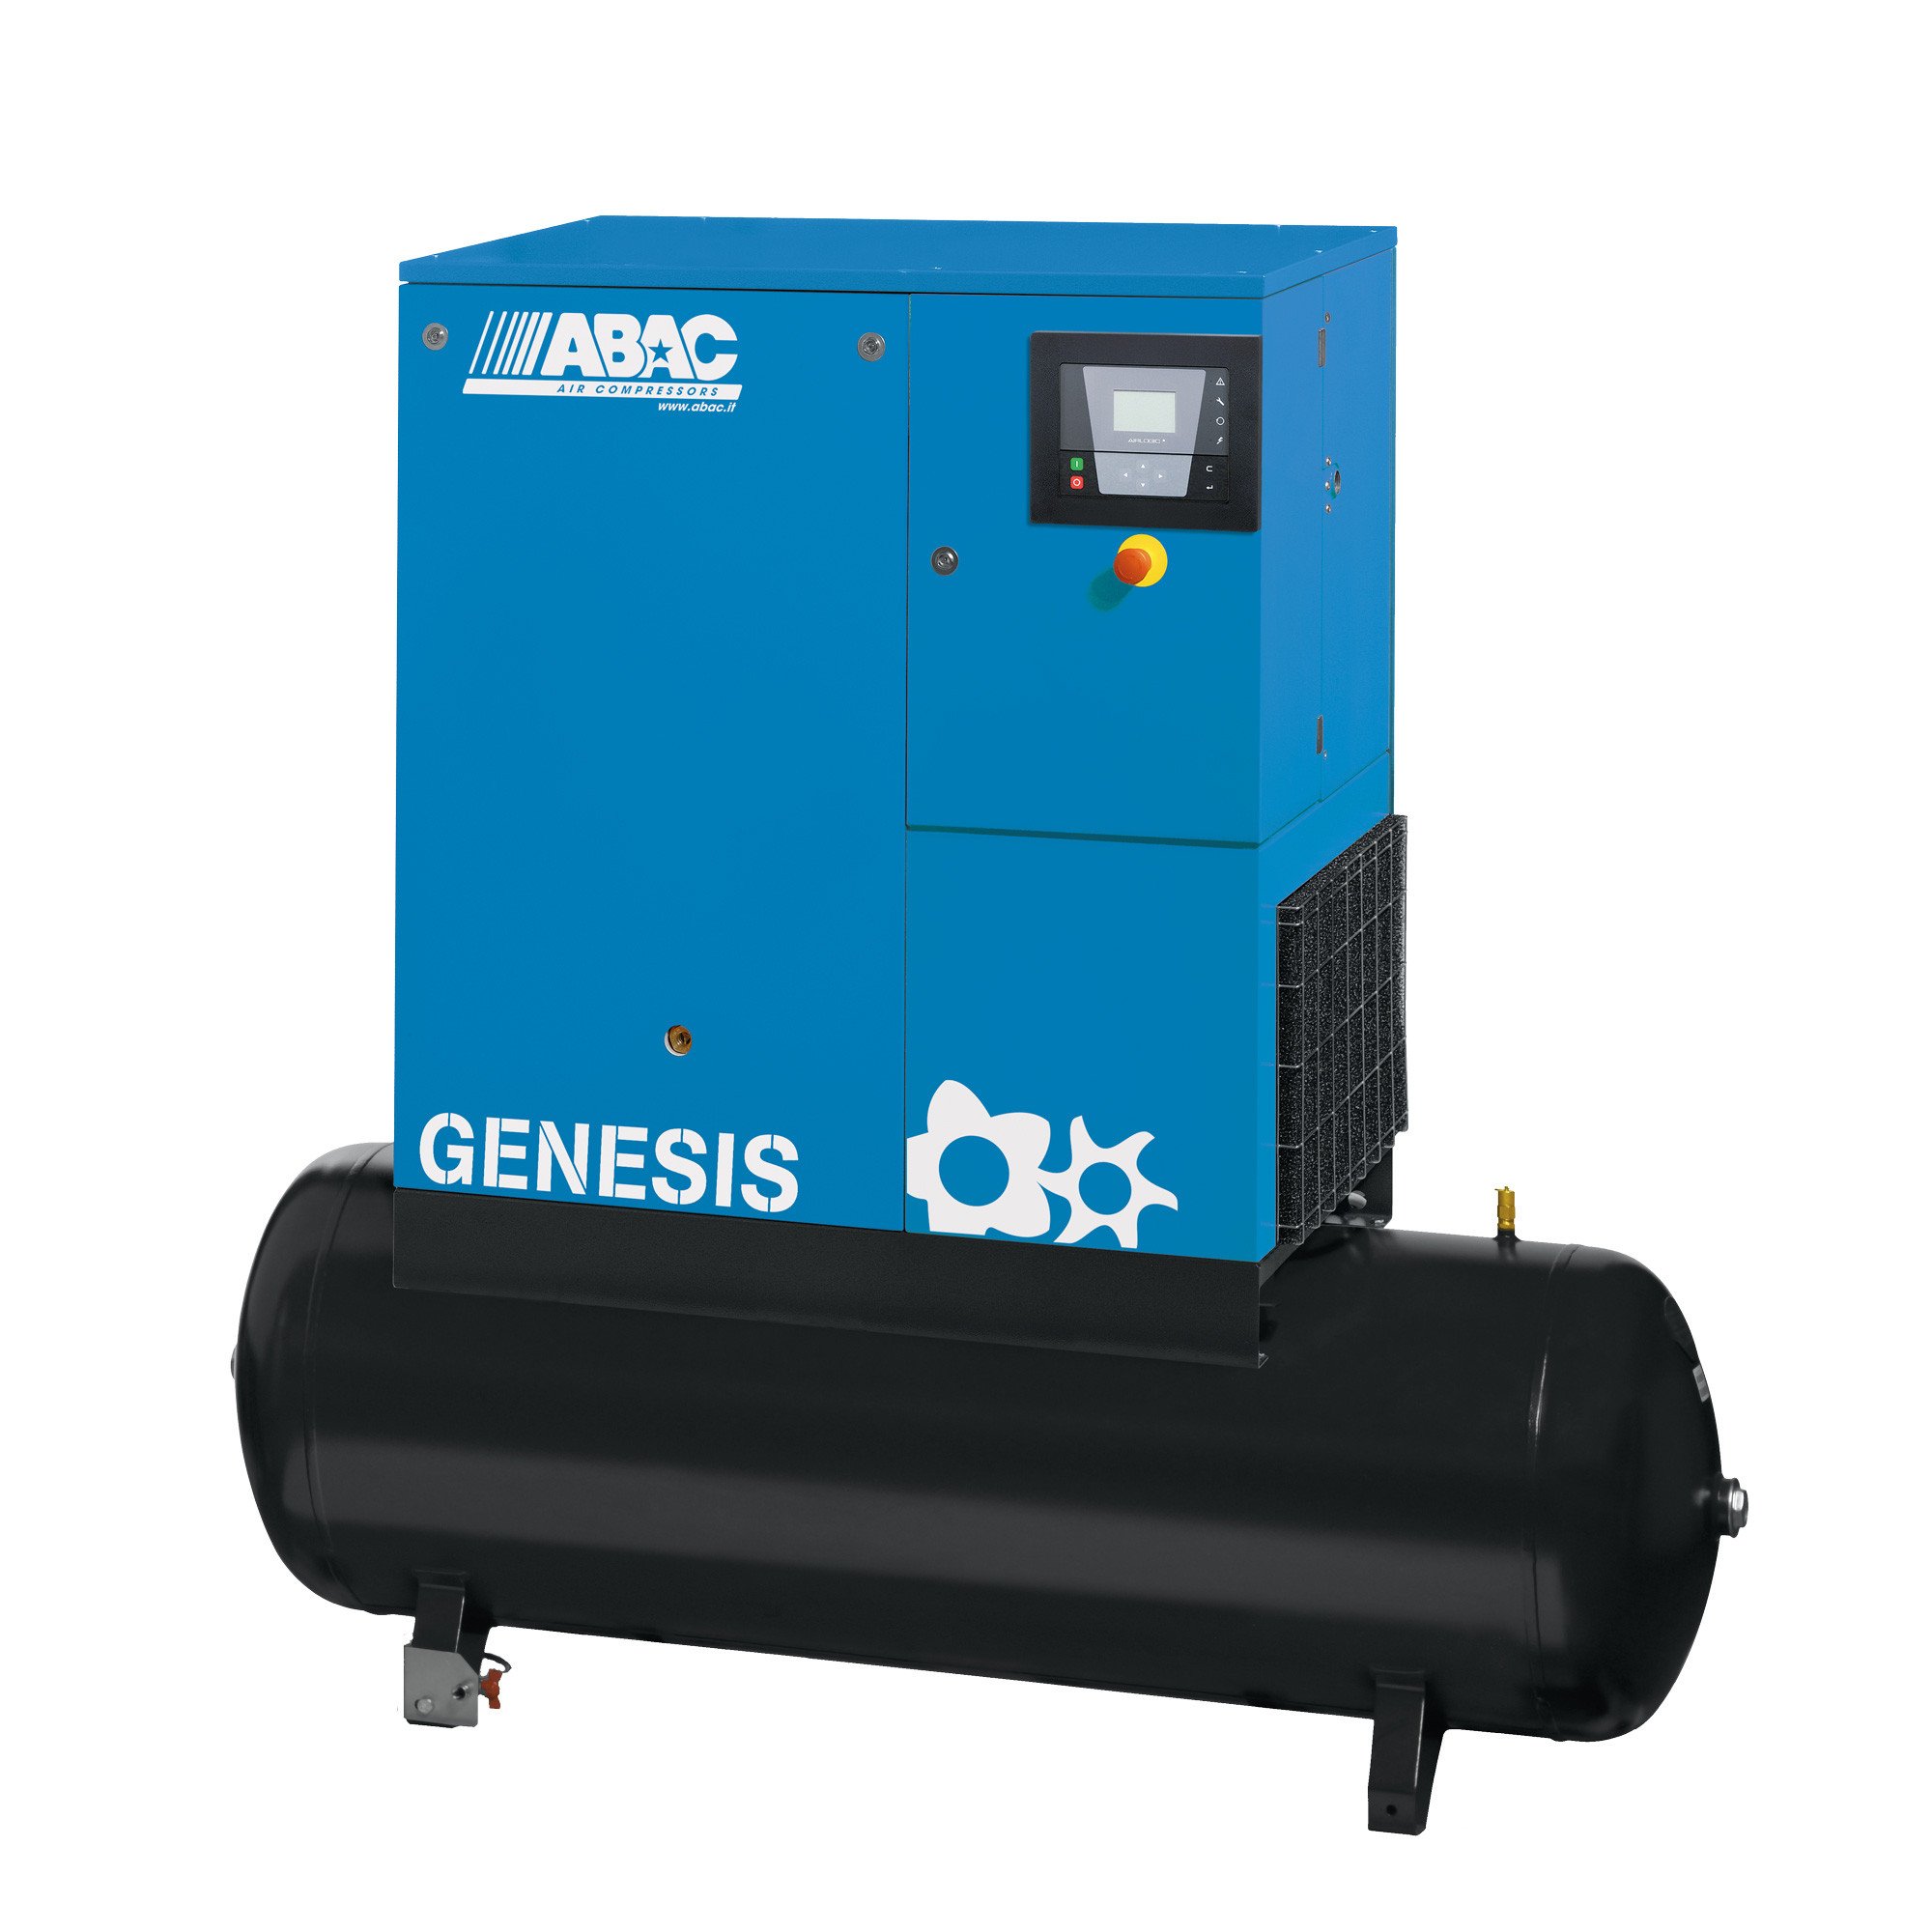 ABAC Genesis 500L, 38.14 CFM, 7.5 kW定速螺杆空压机